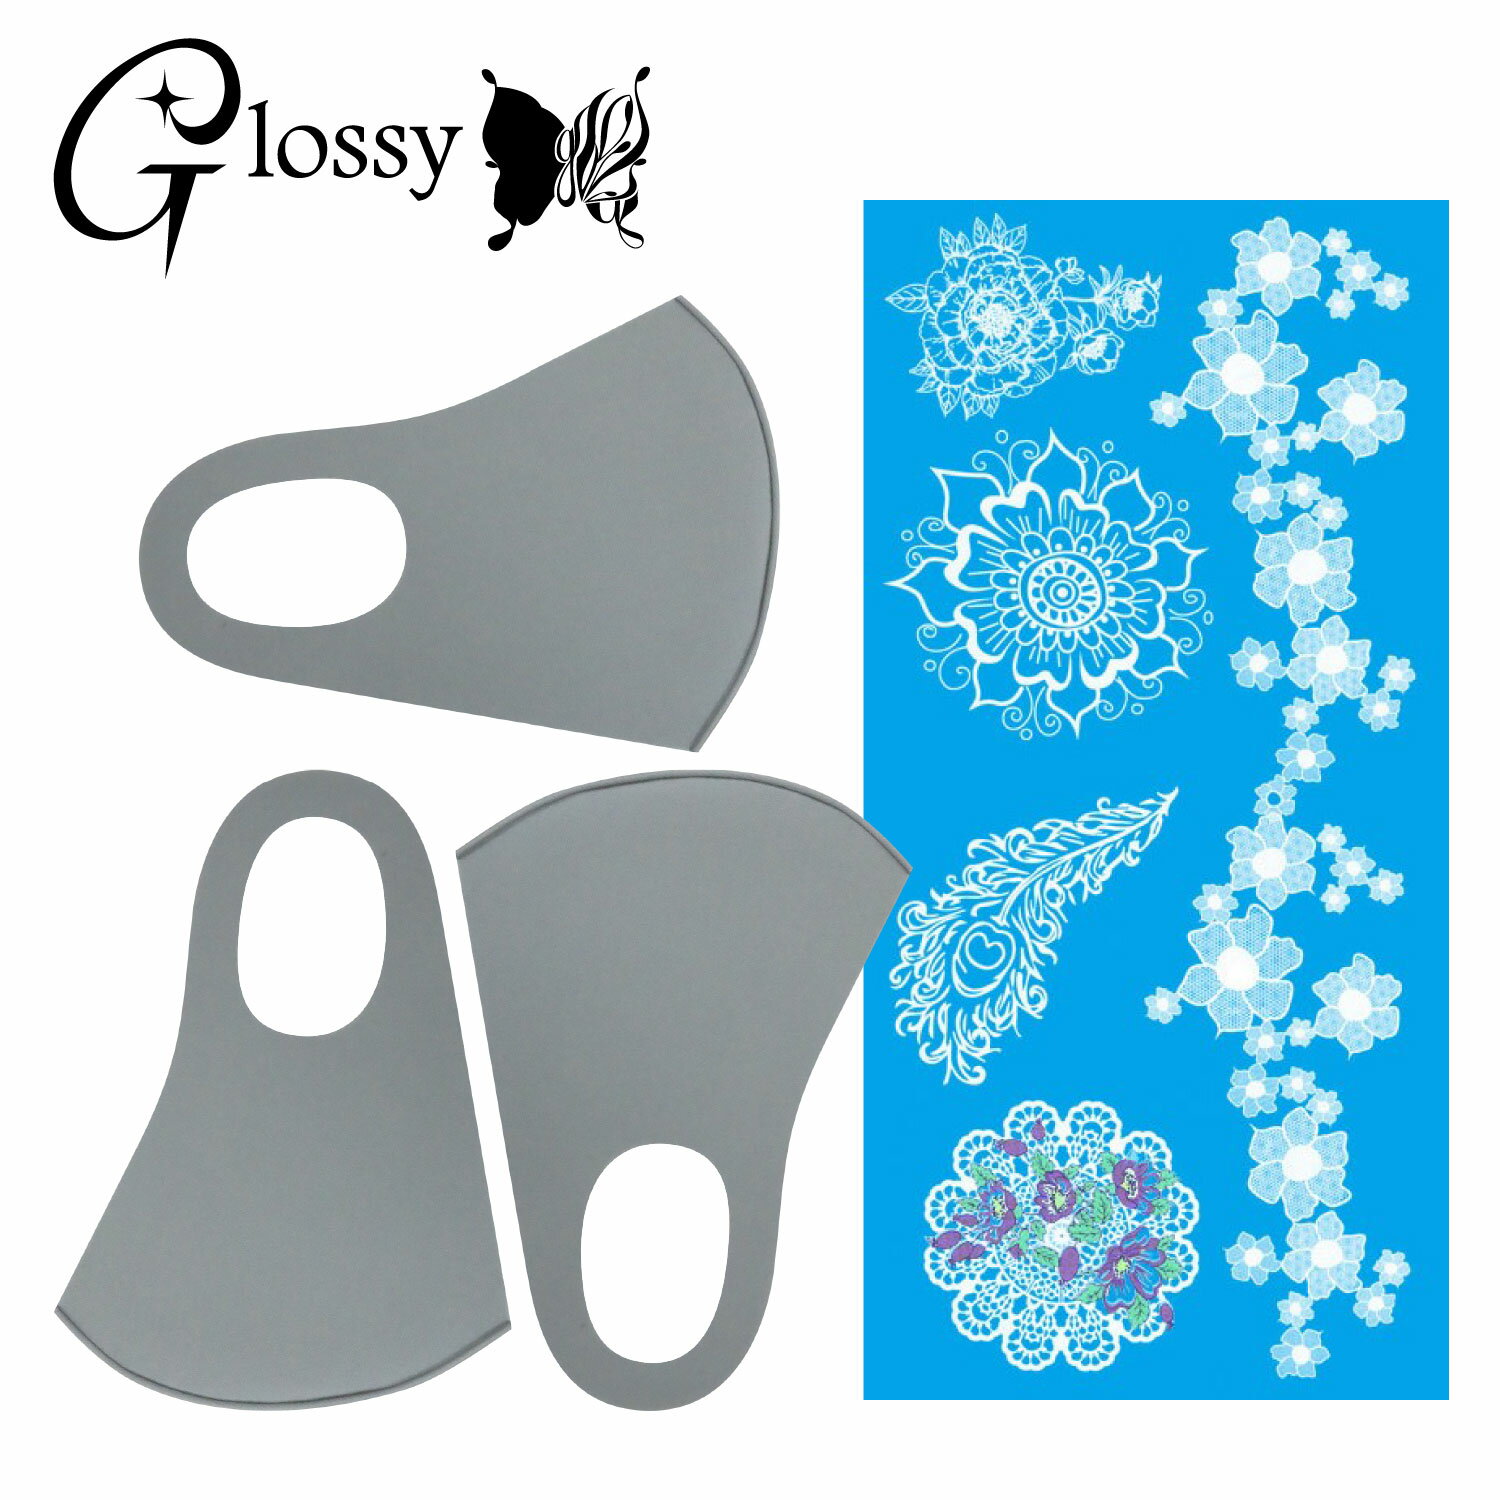 Glossy(グロッシー) デコマスク カラーマスク デコレーションマスクキット 白 レース 花 シール1枚 マスク3枚 グレー 普通サイズ DM-499GM (ゆうパケット対応)